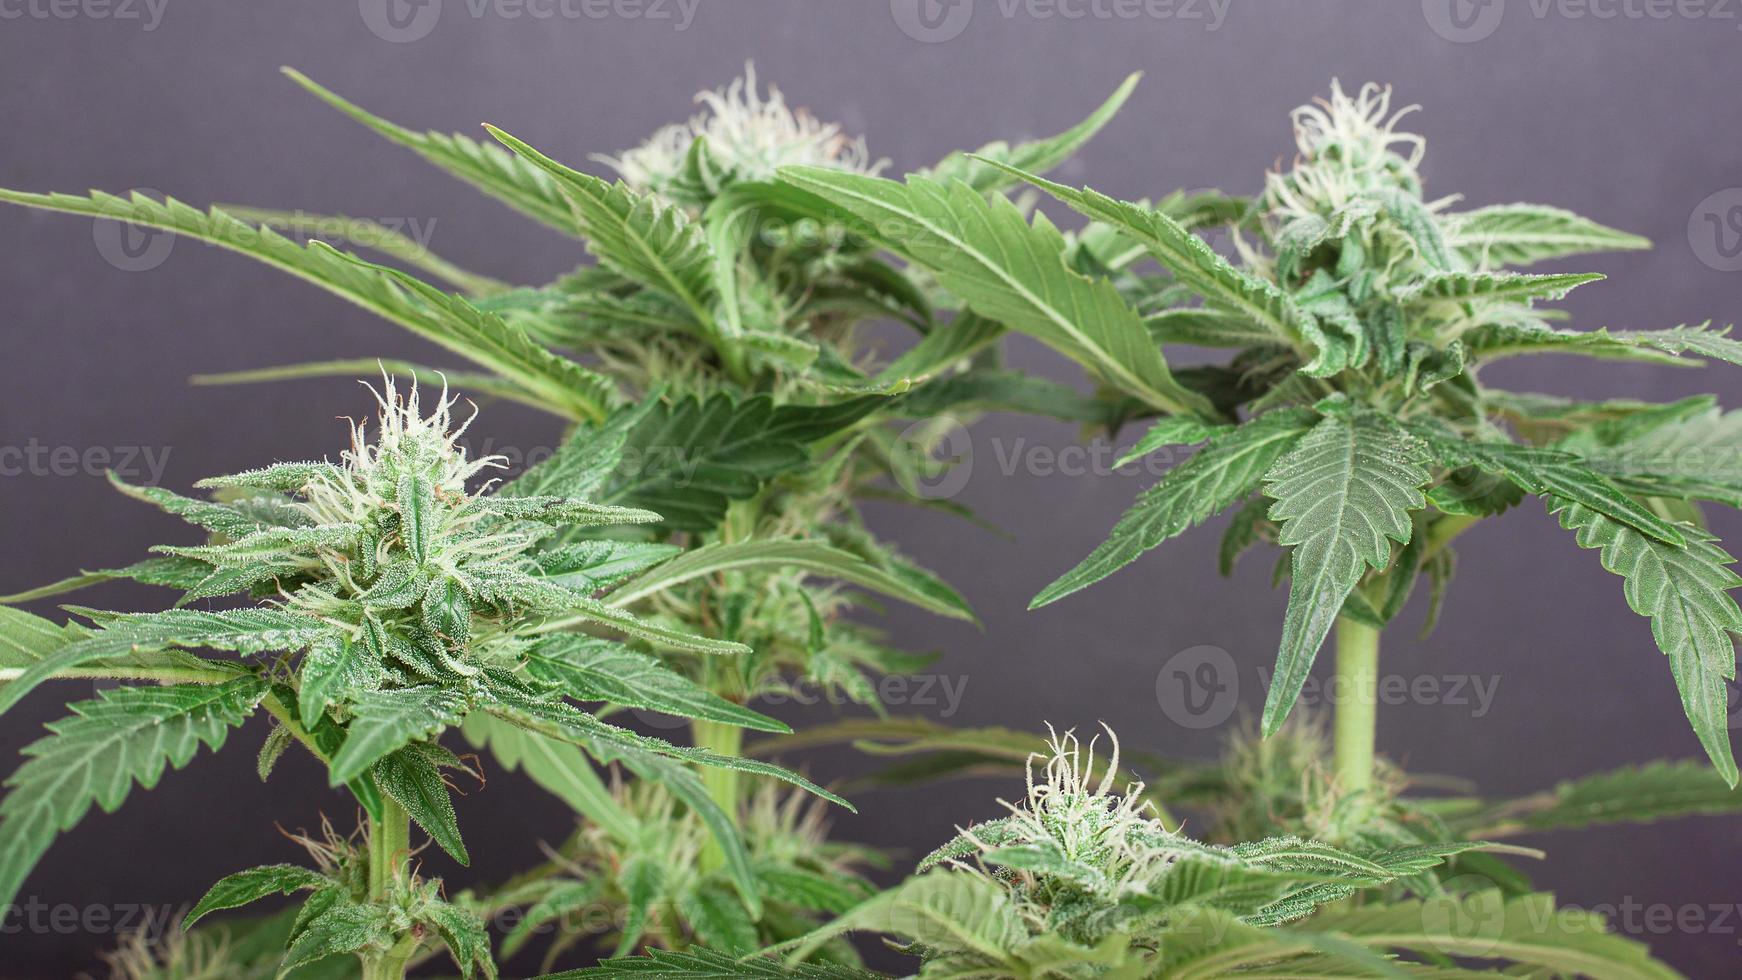 schöner blühender Cannabisbusch mit schneeweißen Knospen, die mit Trichomen übersät sind foto